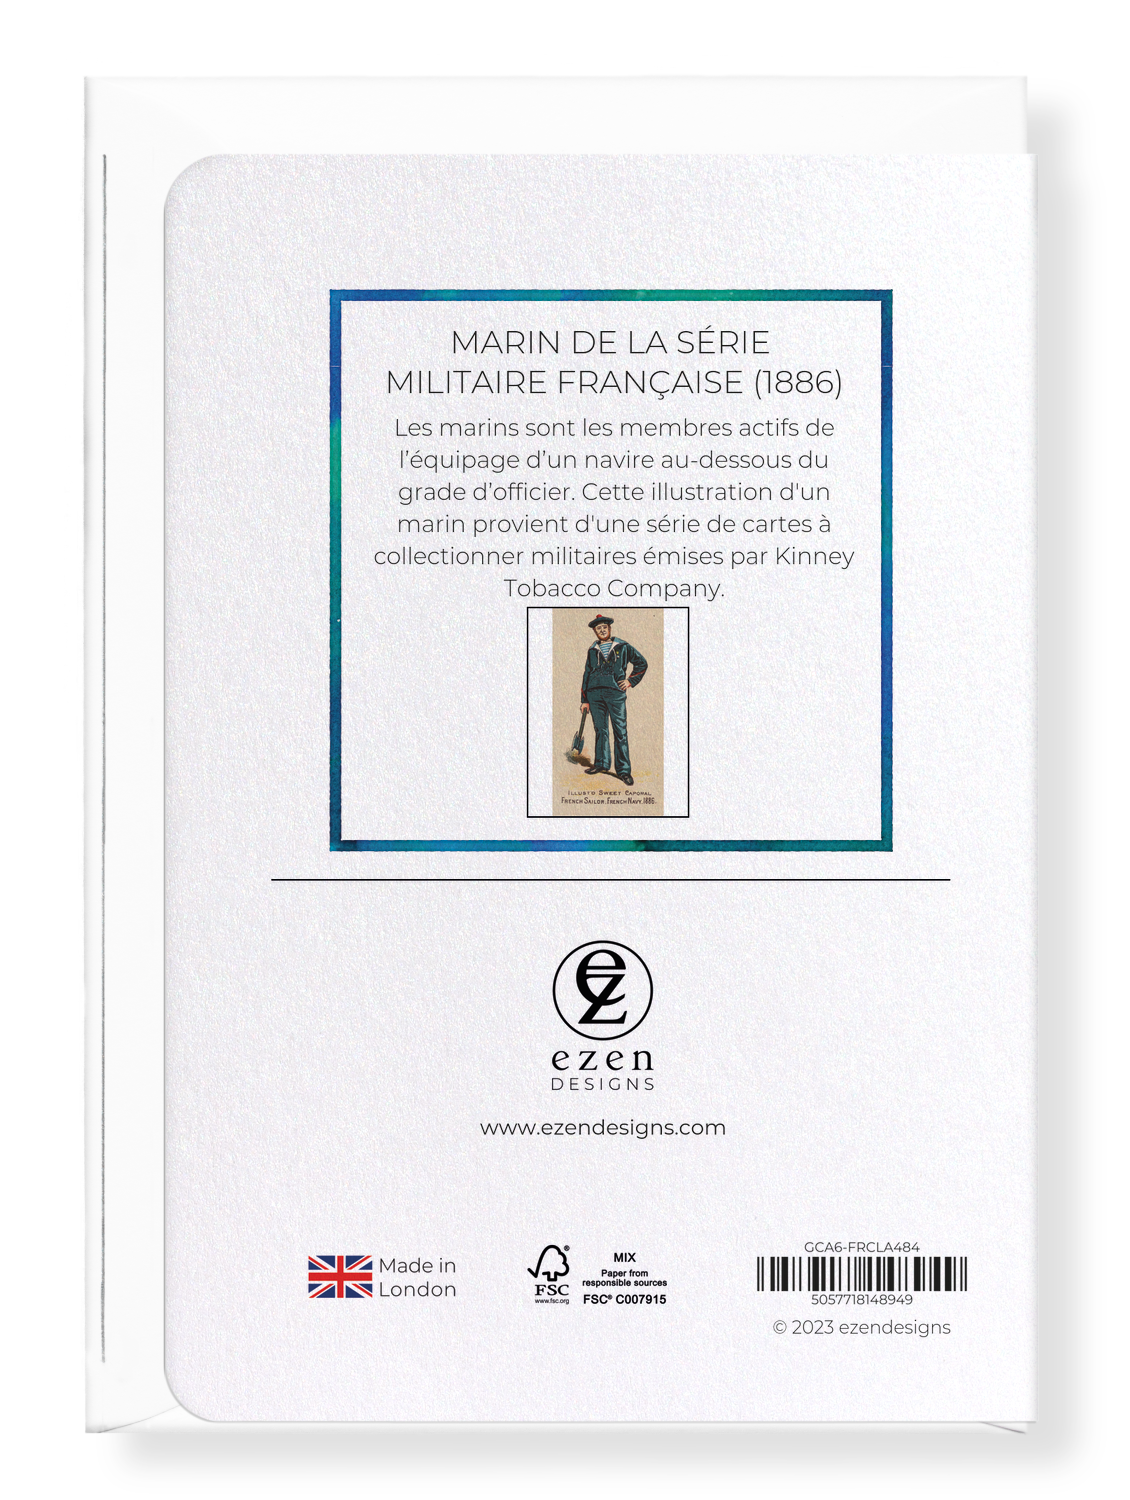 Ezen Designs - Marin de la Série Militaire Française (1886) - Greeting Card - Back